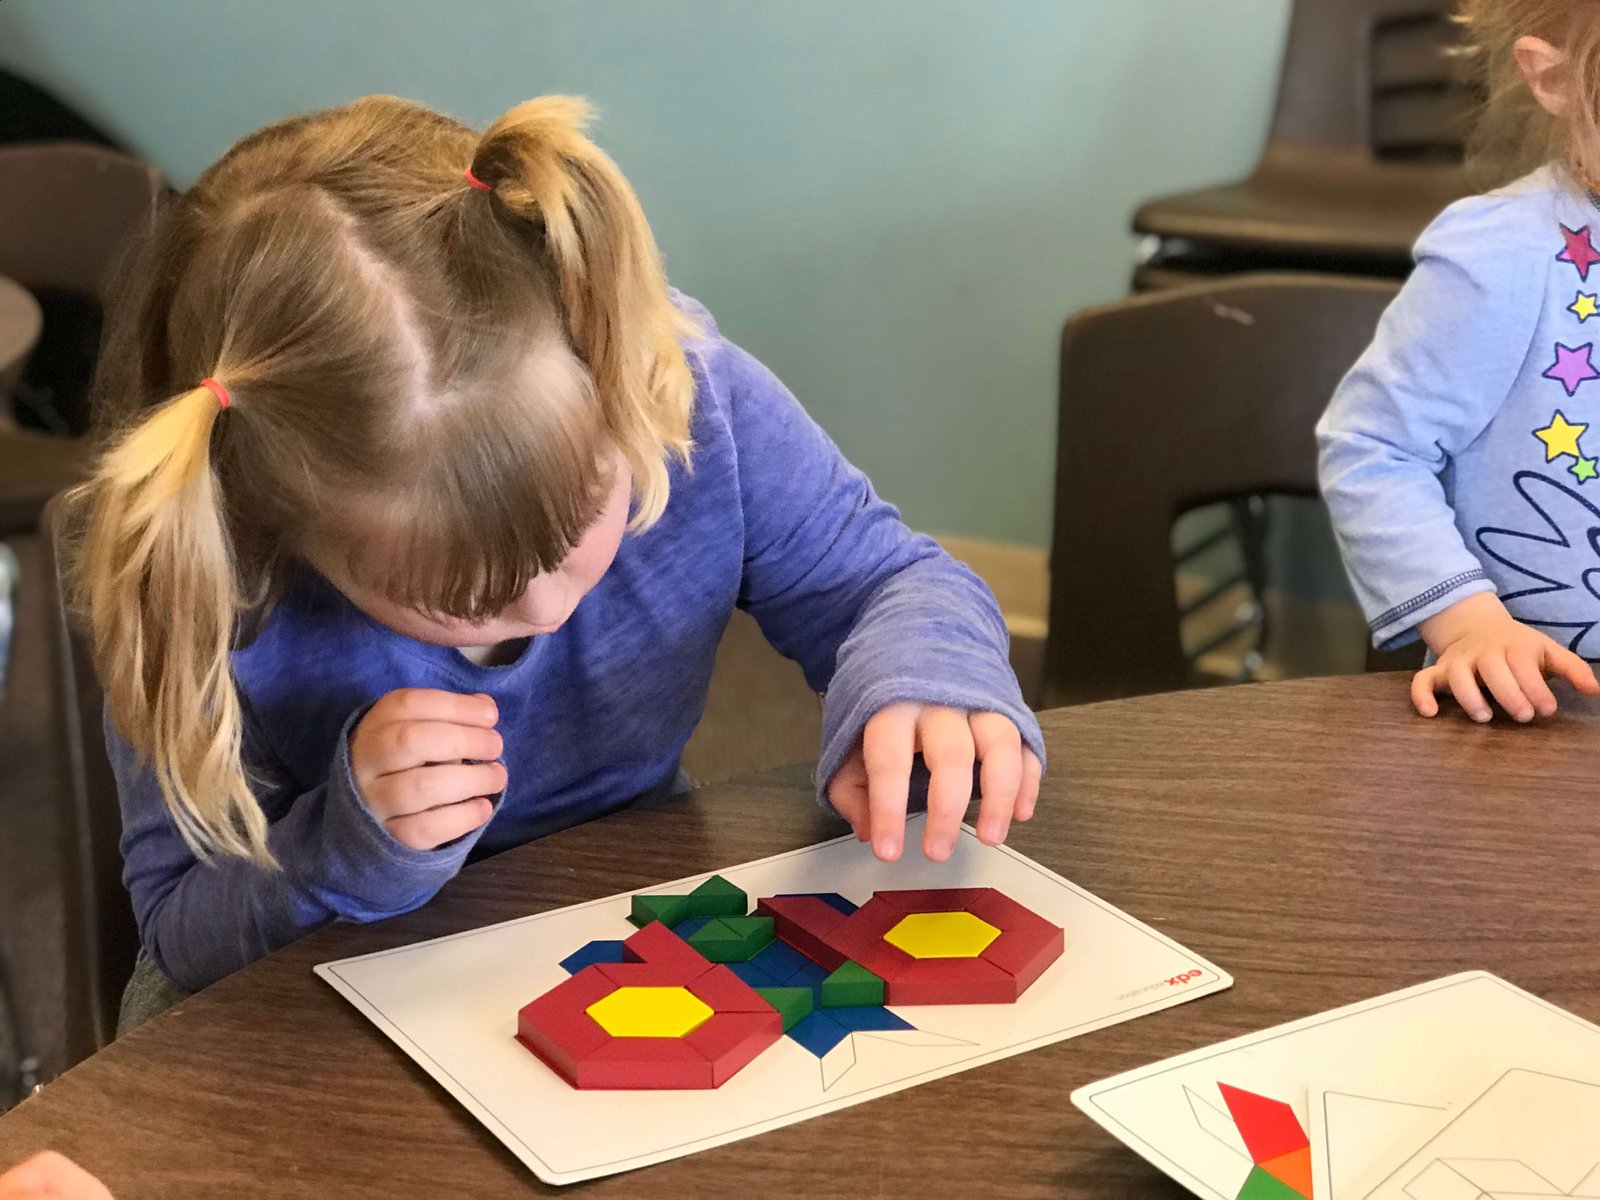 Child using pattern blocks and pattern card.